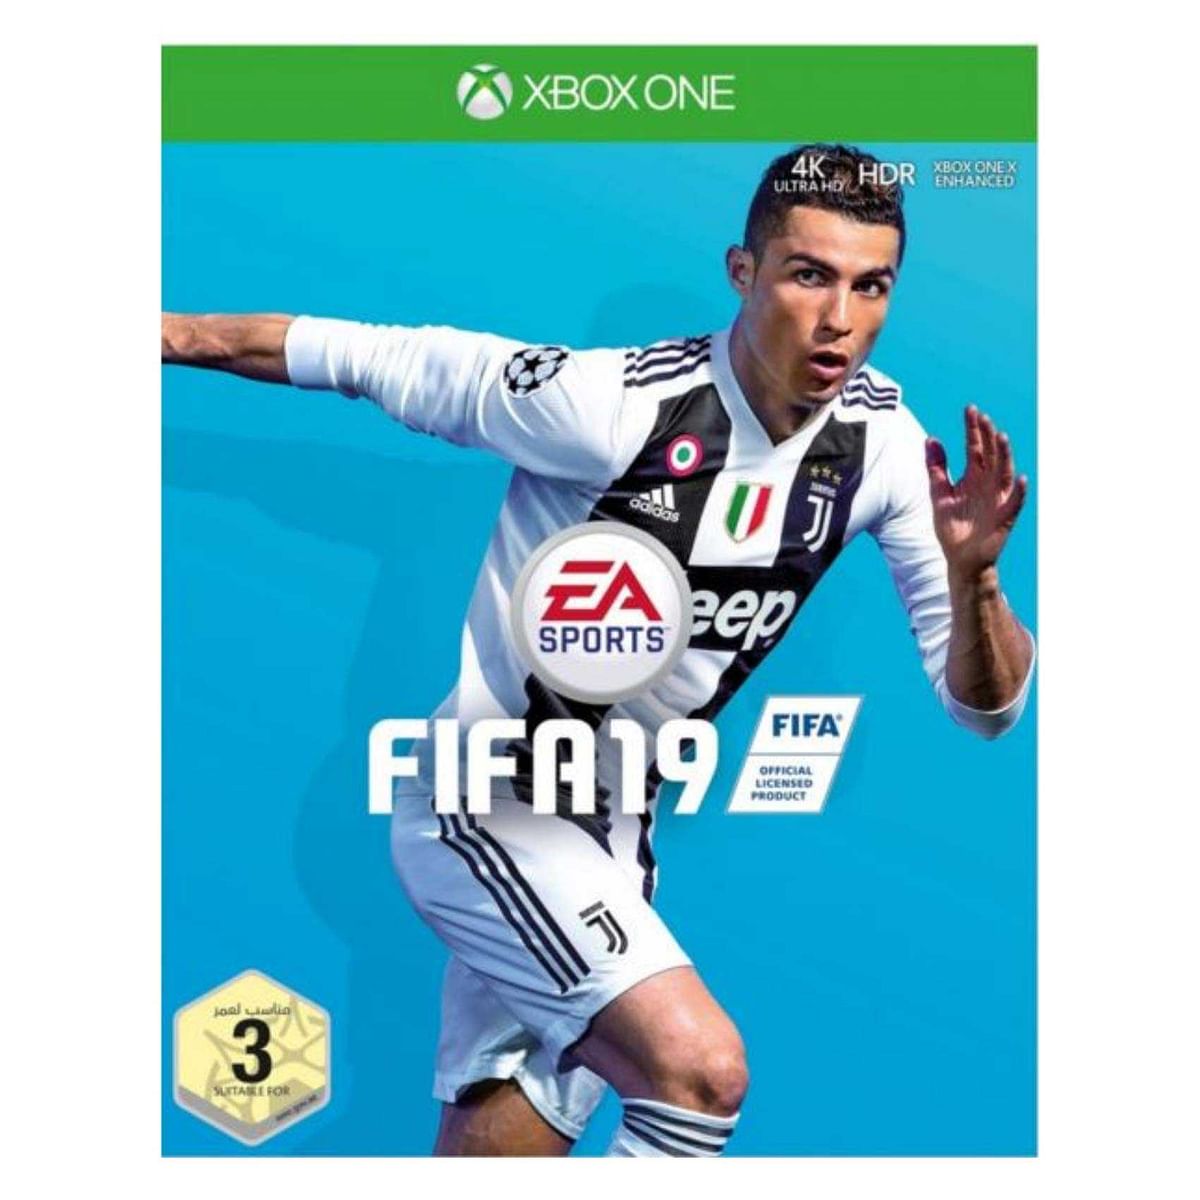 Fifa 19 by EA Sports Region 2 - Xbox One